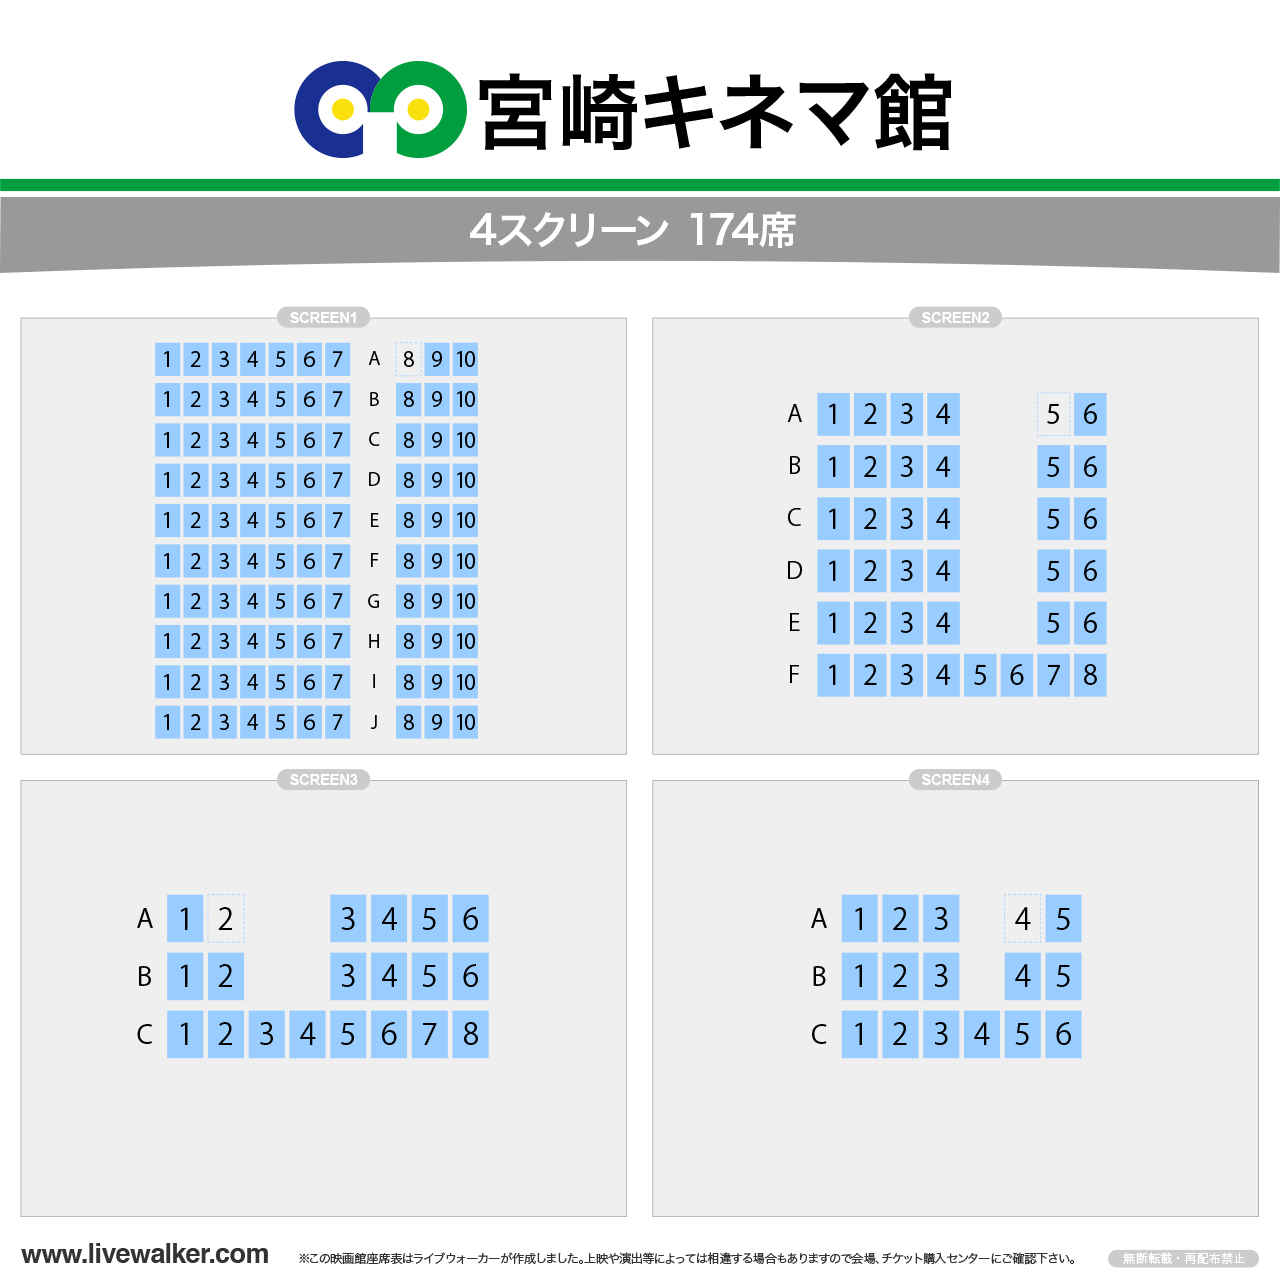 宮崎キネマ館キネマの座席表